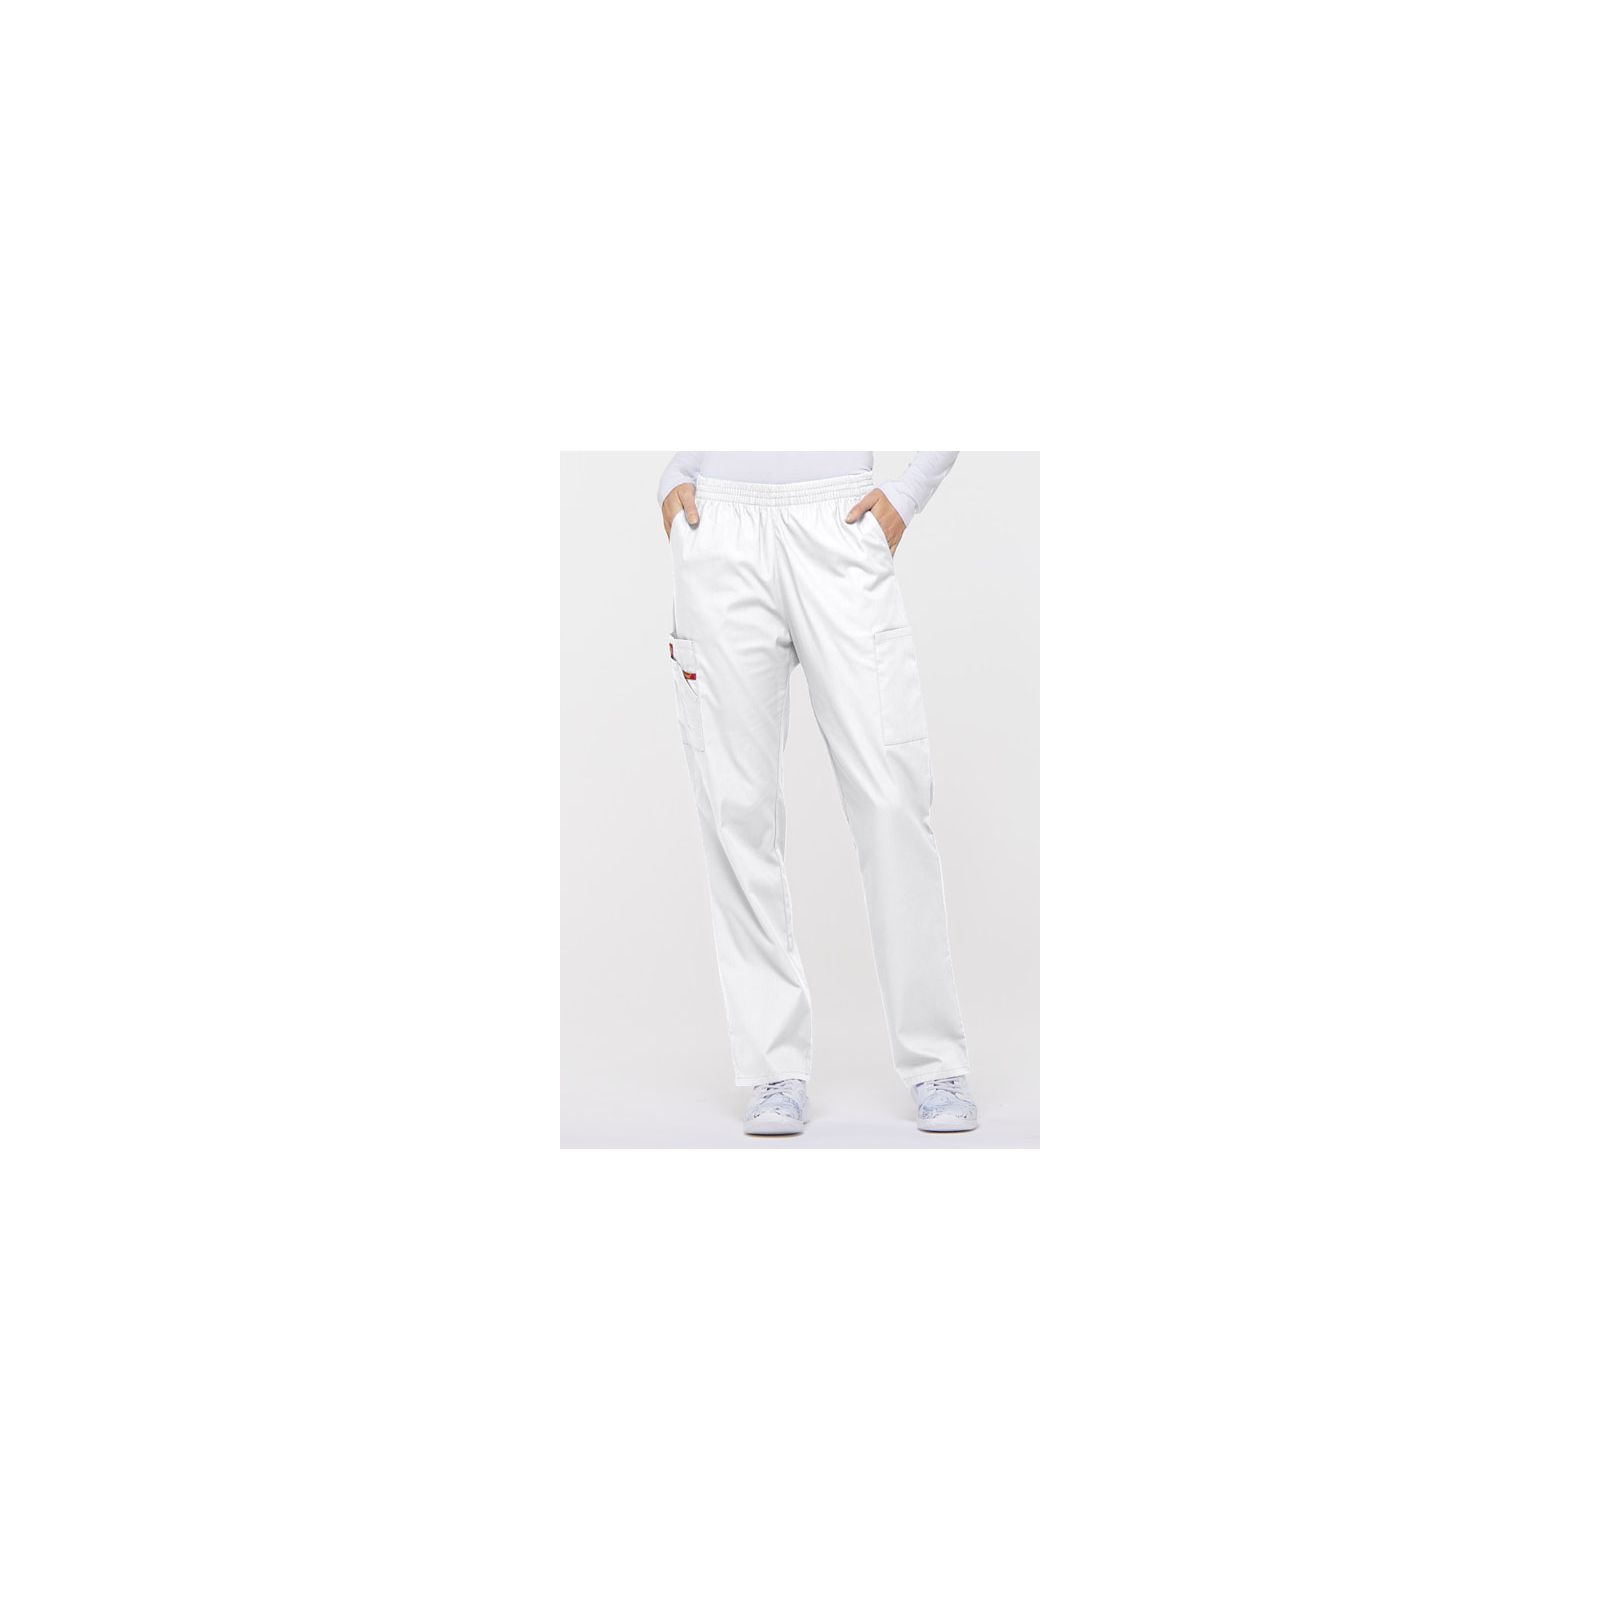 Pantalon médical Unisexe élastique, Dickies, Collection "EDS signature" (86106), couleur blanc, vue face